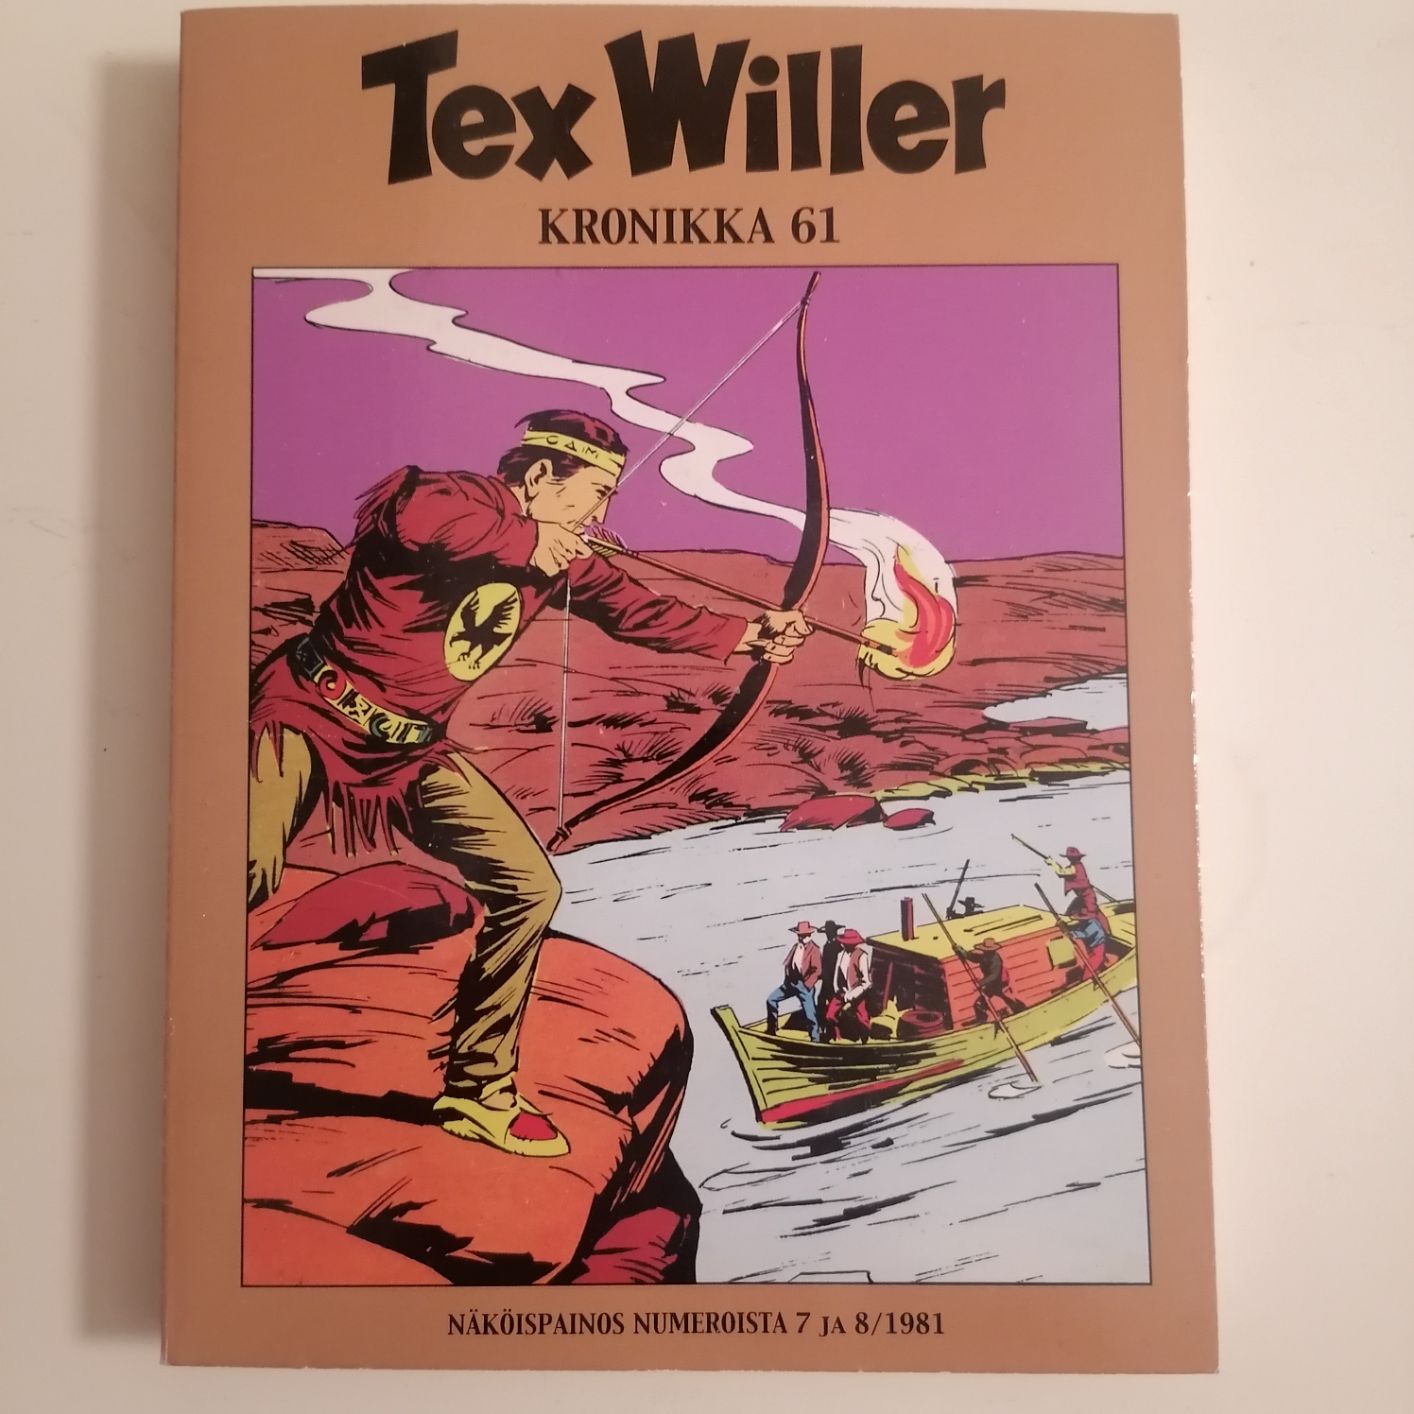 Tex Willer Kronikka 60 näköispainos 7 ja 8 / 1981 siistikuntoinen ja lukematon hinta 5,50 euroa.